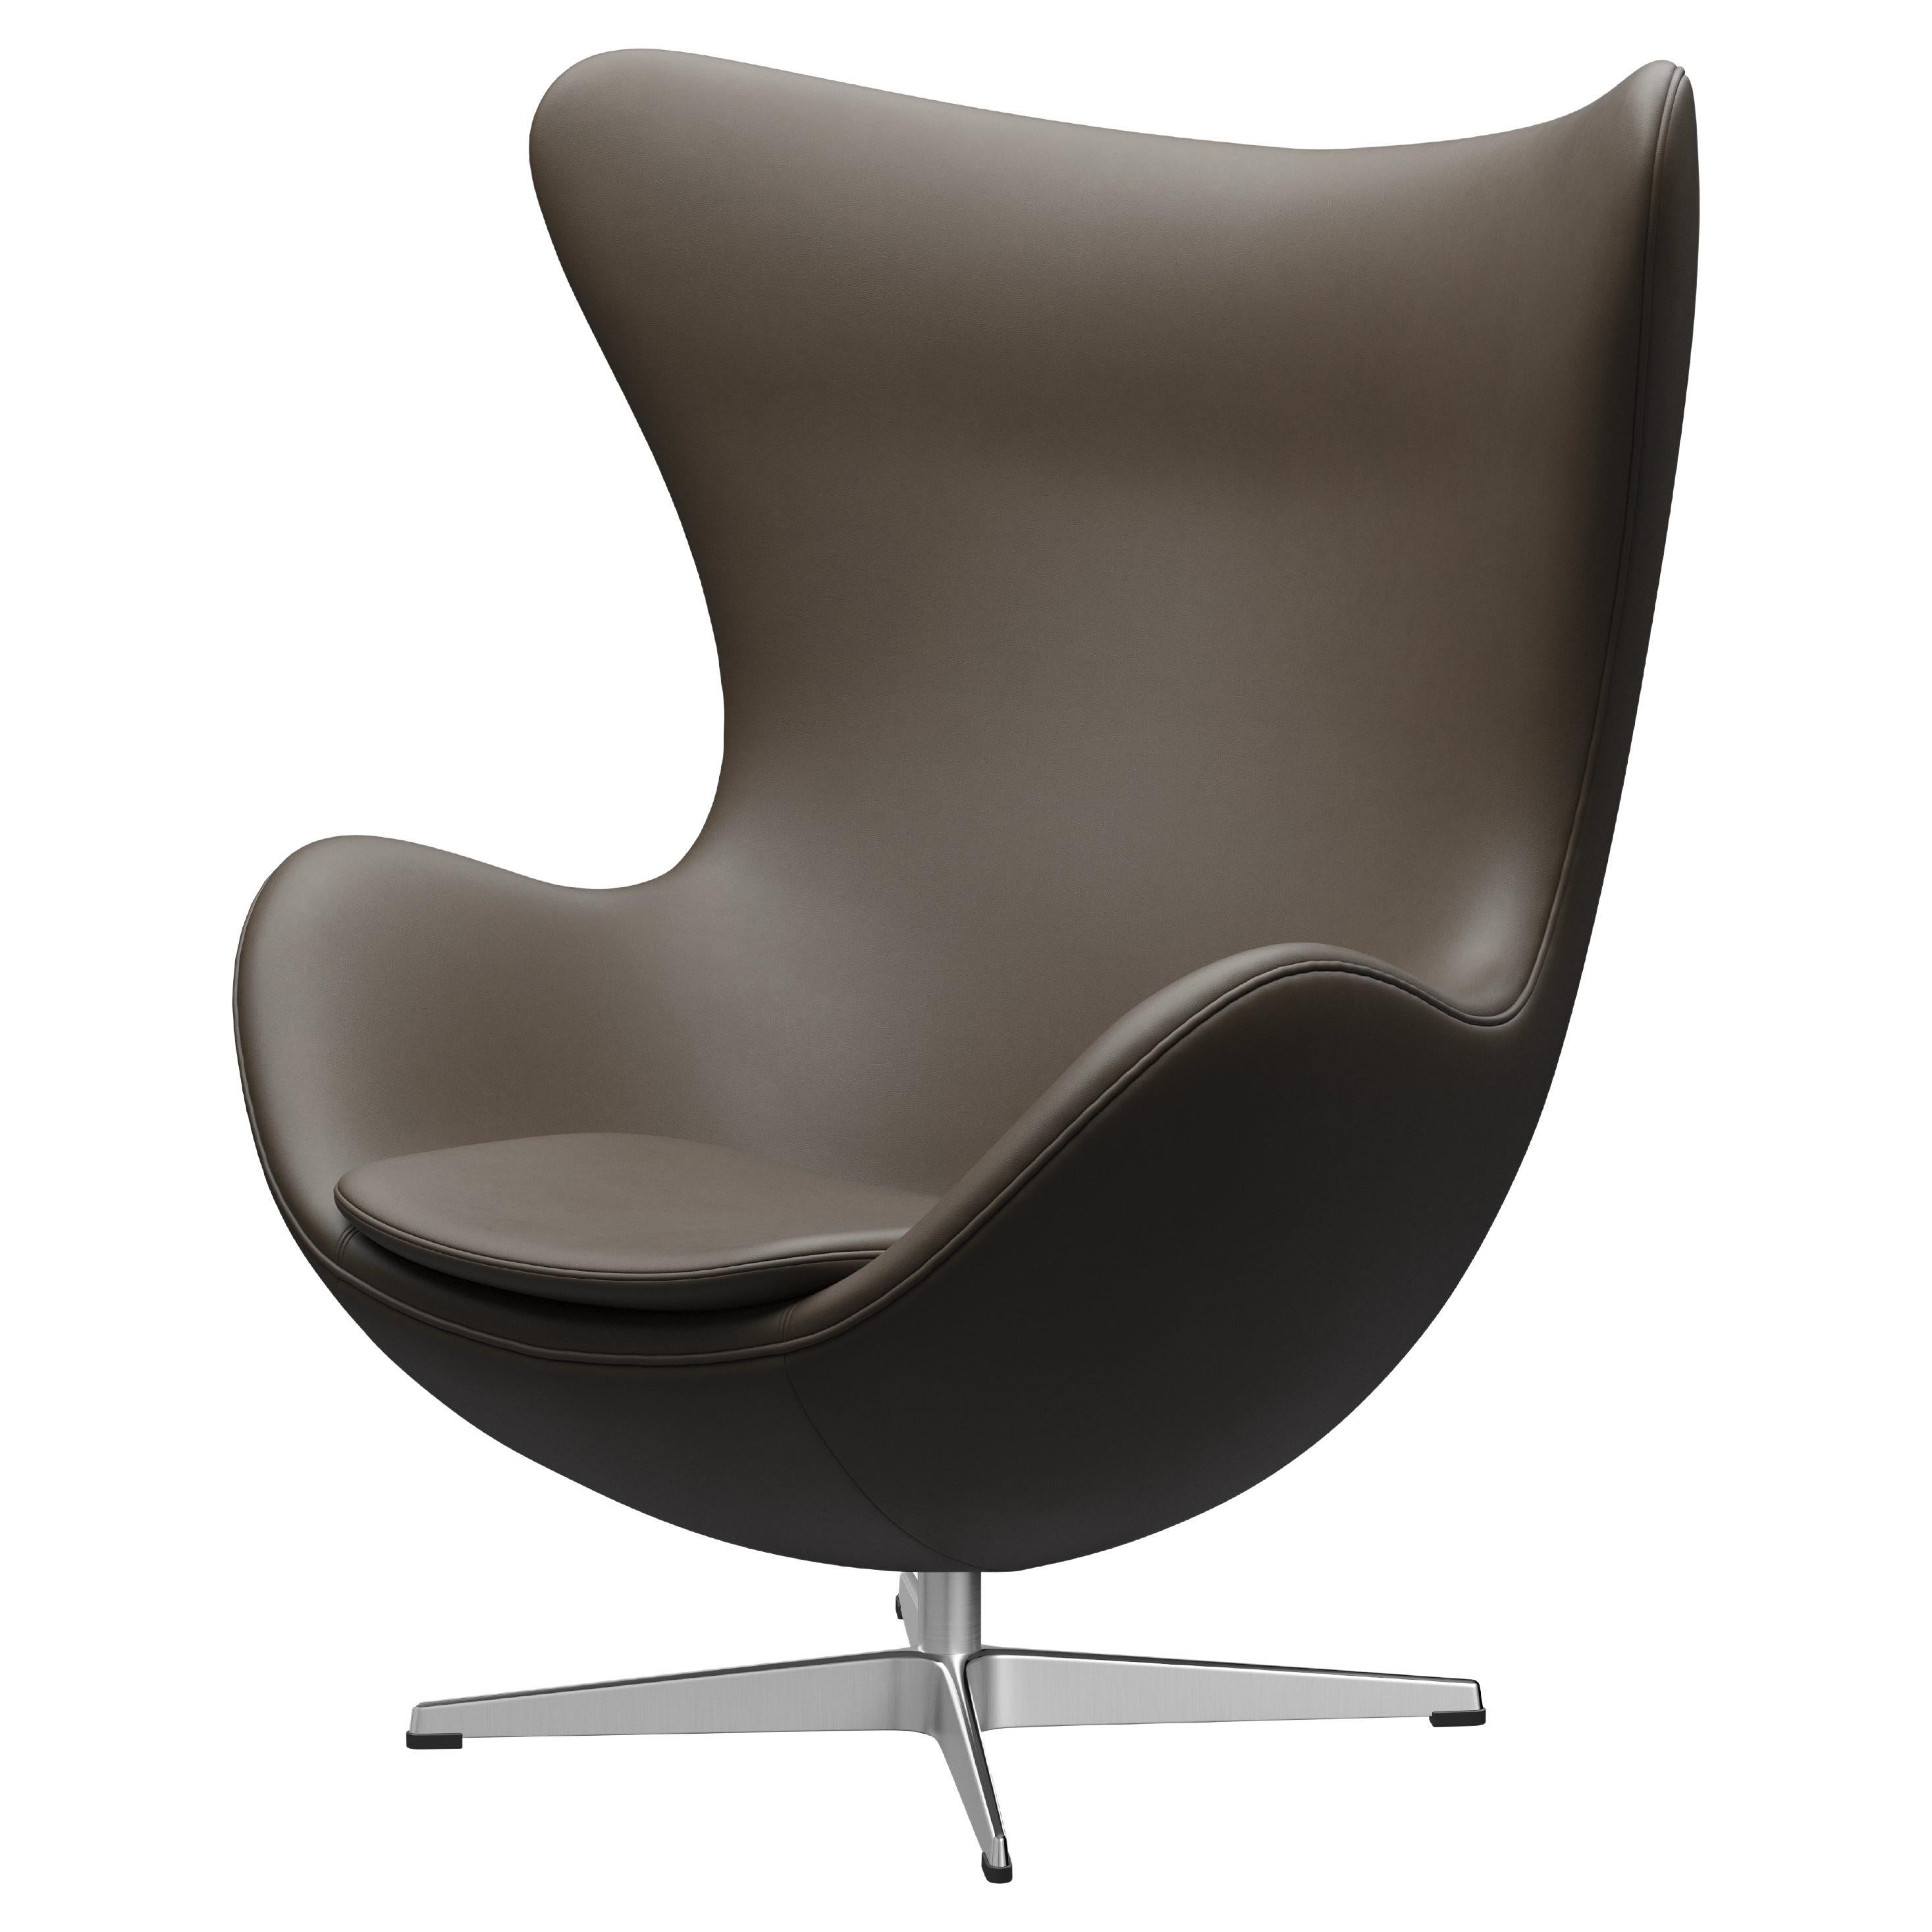 Arne Jacobsen 'Egg' Chair for Fritz Hansen in Leather Upholstery (Cat. 3)